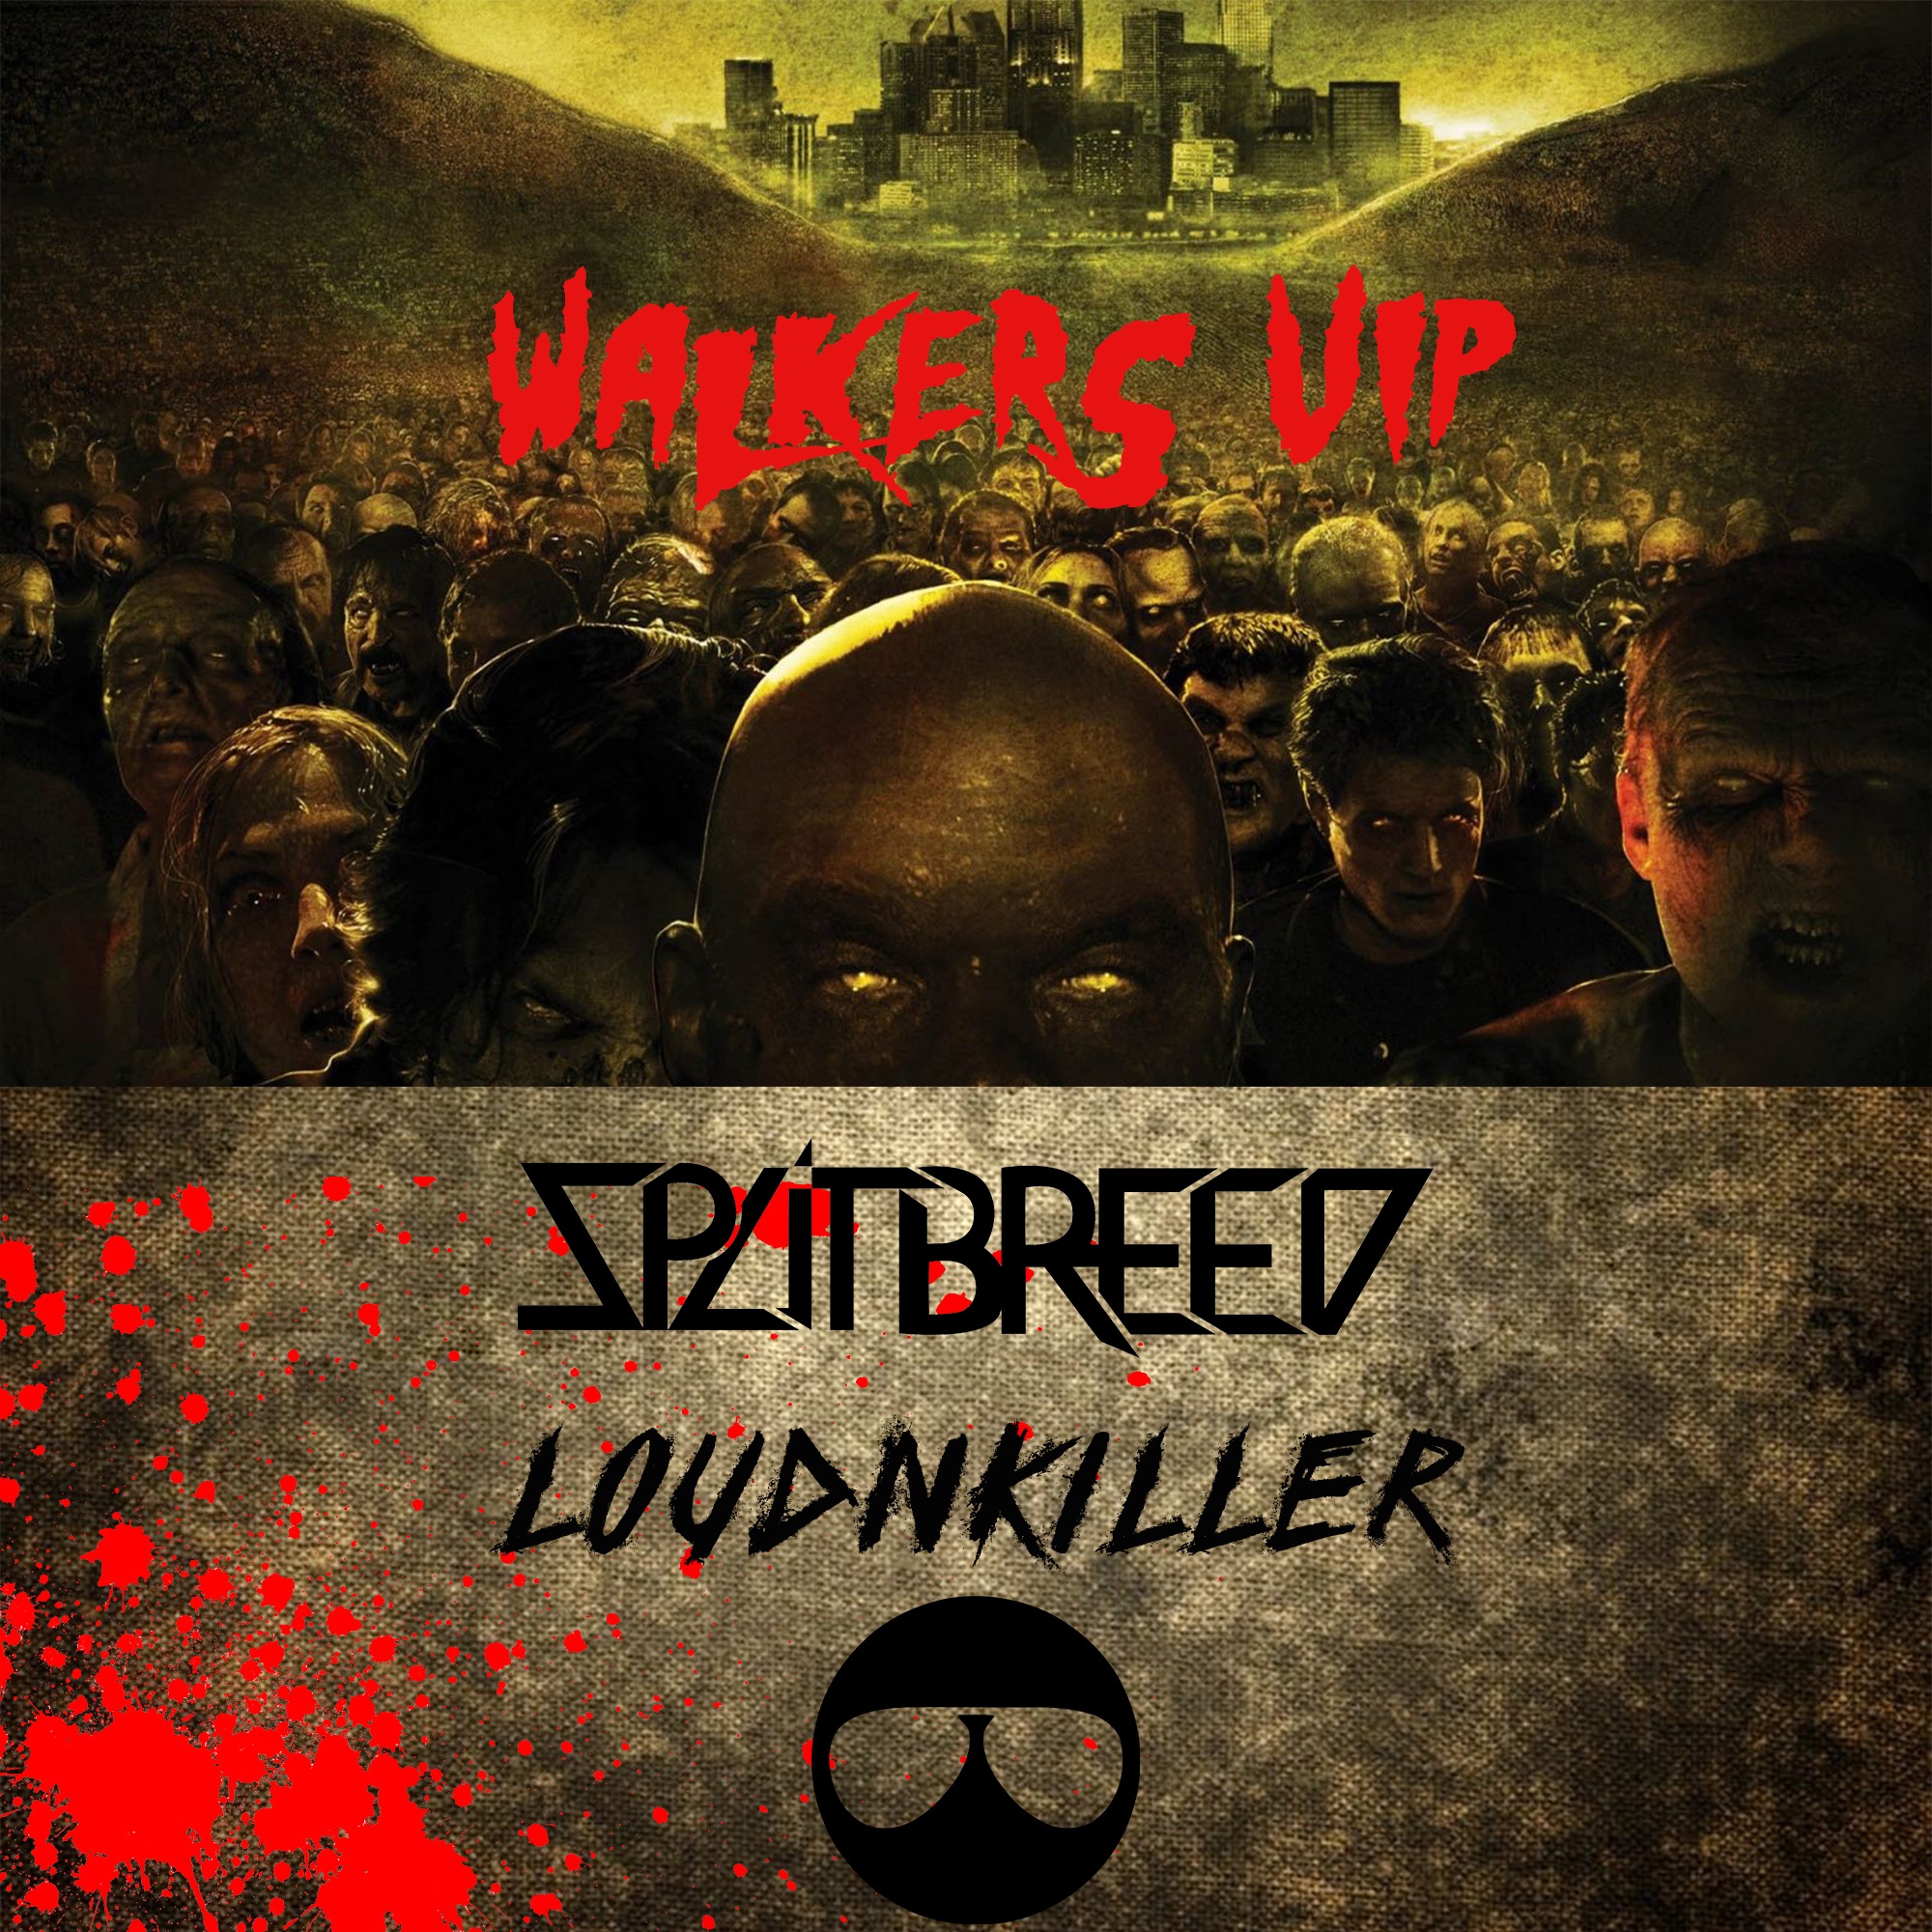 Unduh SPLITBREED & LOUD N' KILLER - WALKERS (VIP)